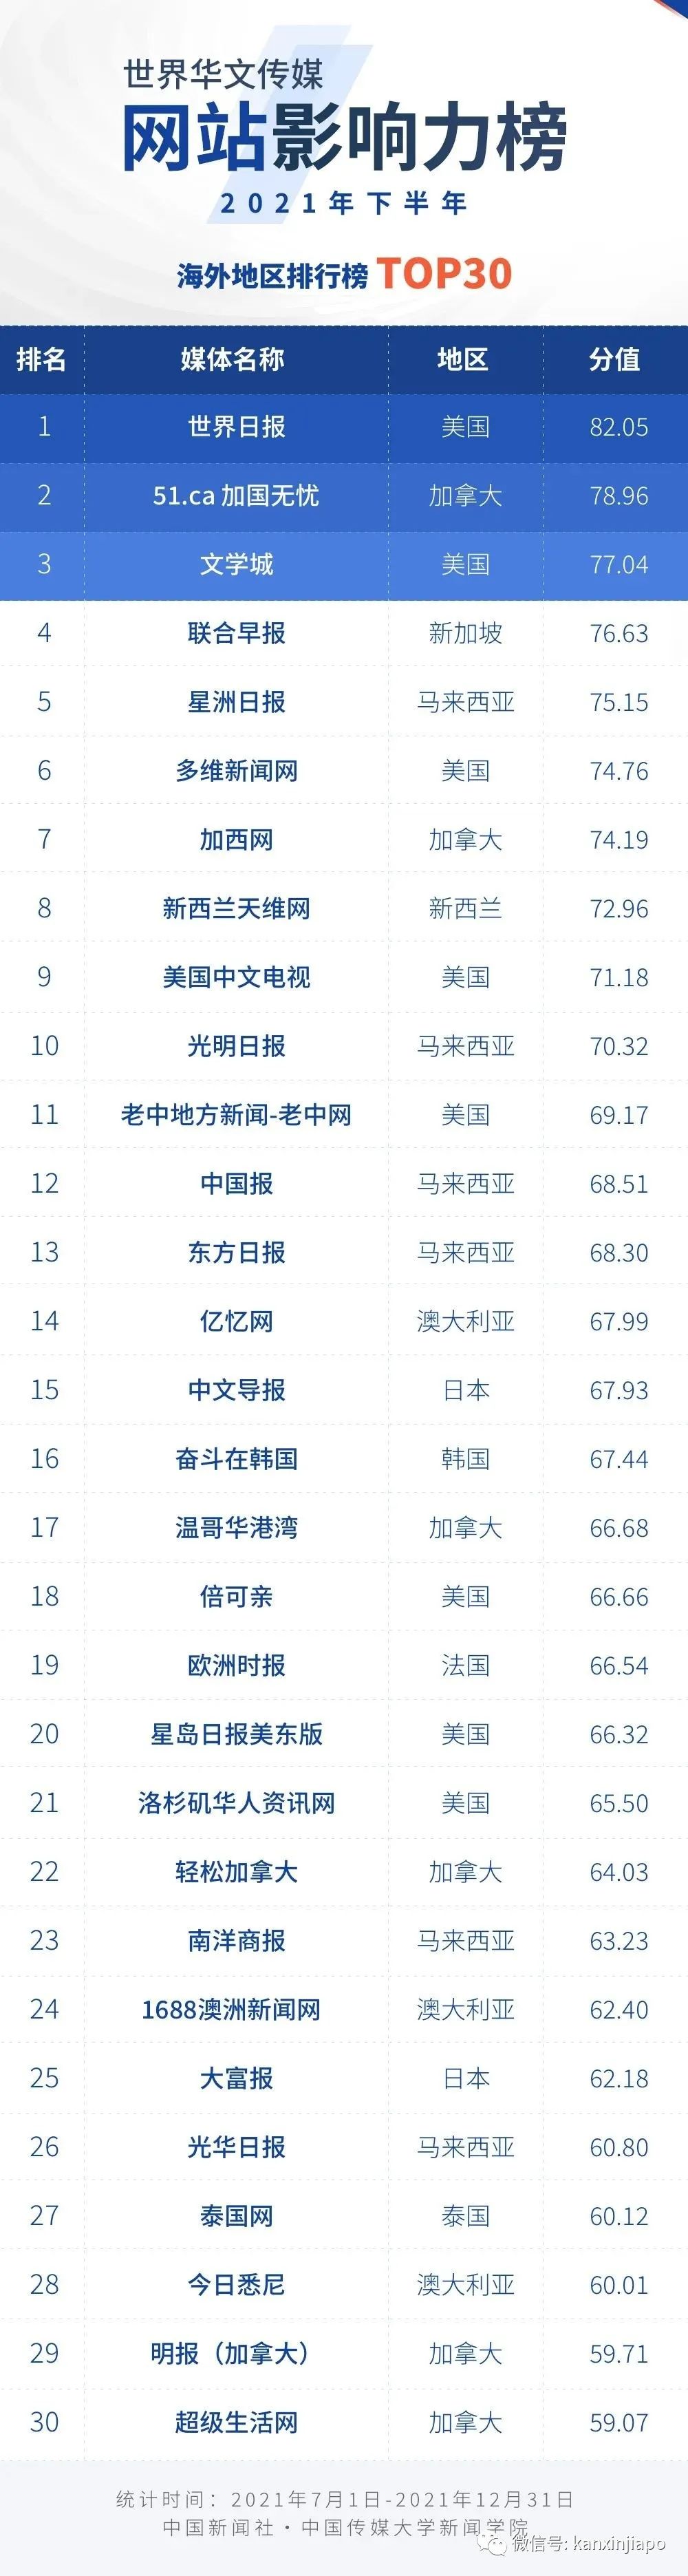 中國發布世界華文新媒體影響力榜，新加坡只有兩家上榜